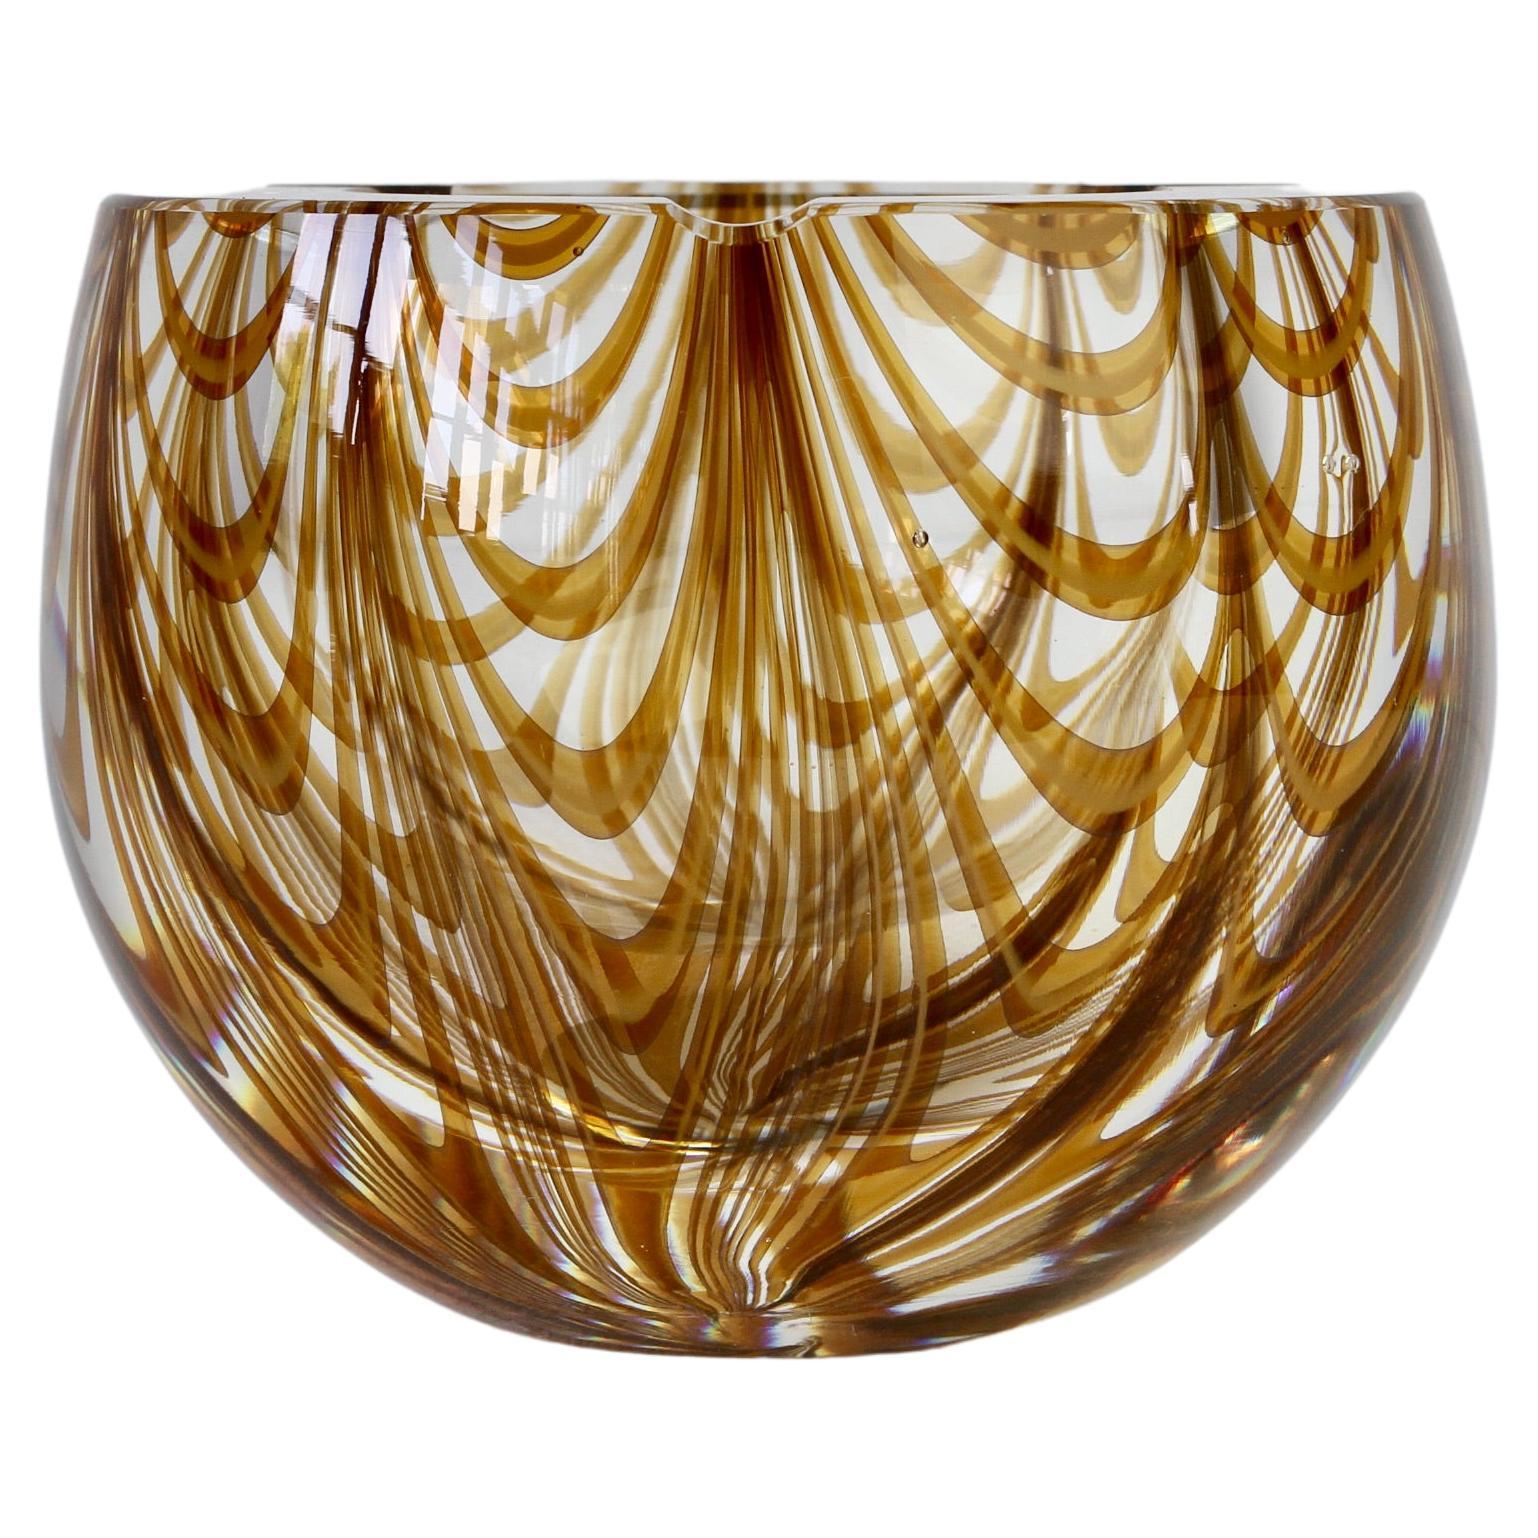 Grand cendrier italien en verre de Murano ambré transparent « Zebrato » signé Cenedese, années 1970